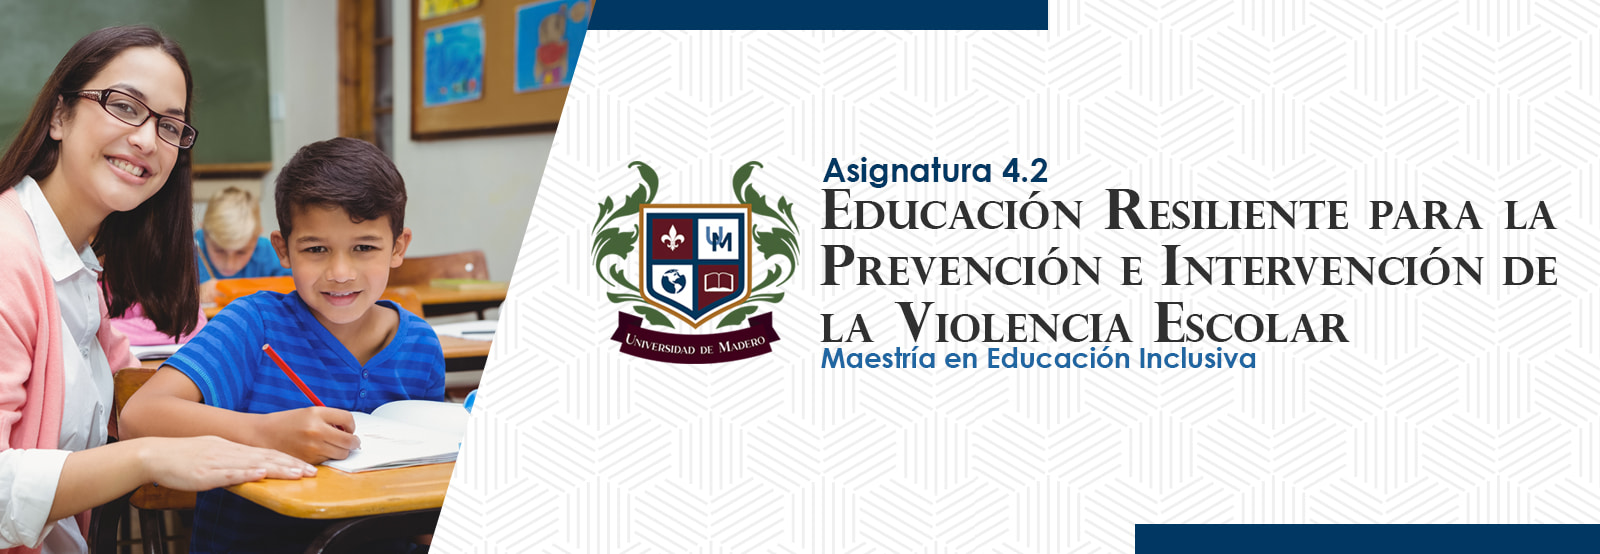 MEI0402 Educación Resiliente para la Prevención e Intervención de la Violencia Escolar